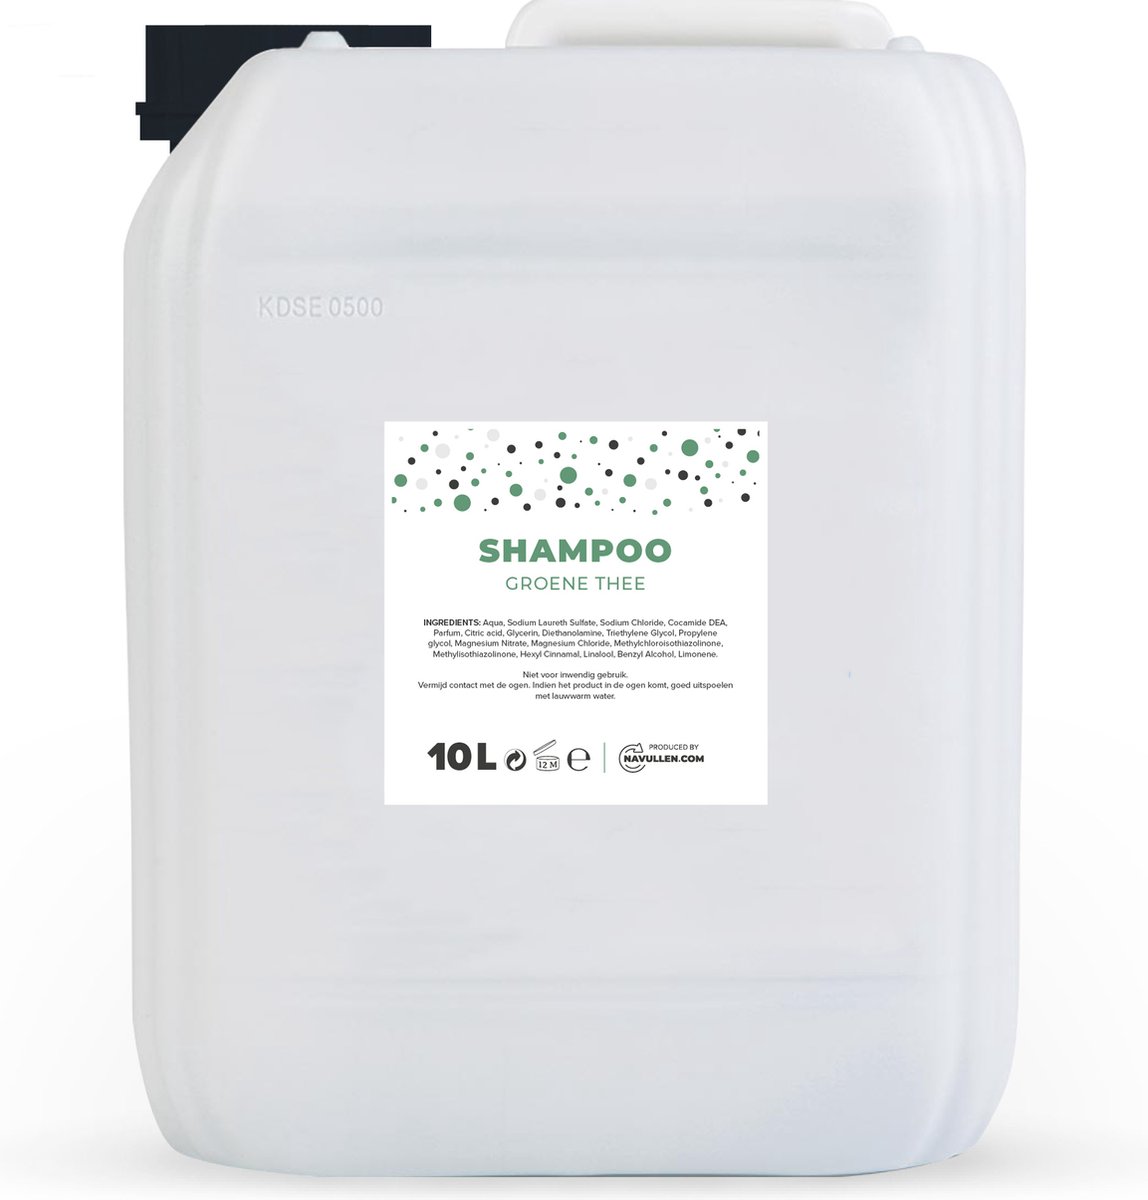 Shampoo - Groene thee - 10 Liter - Jerrycan - Navulling - Navullen